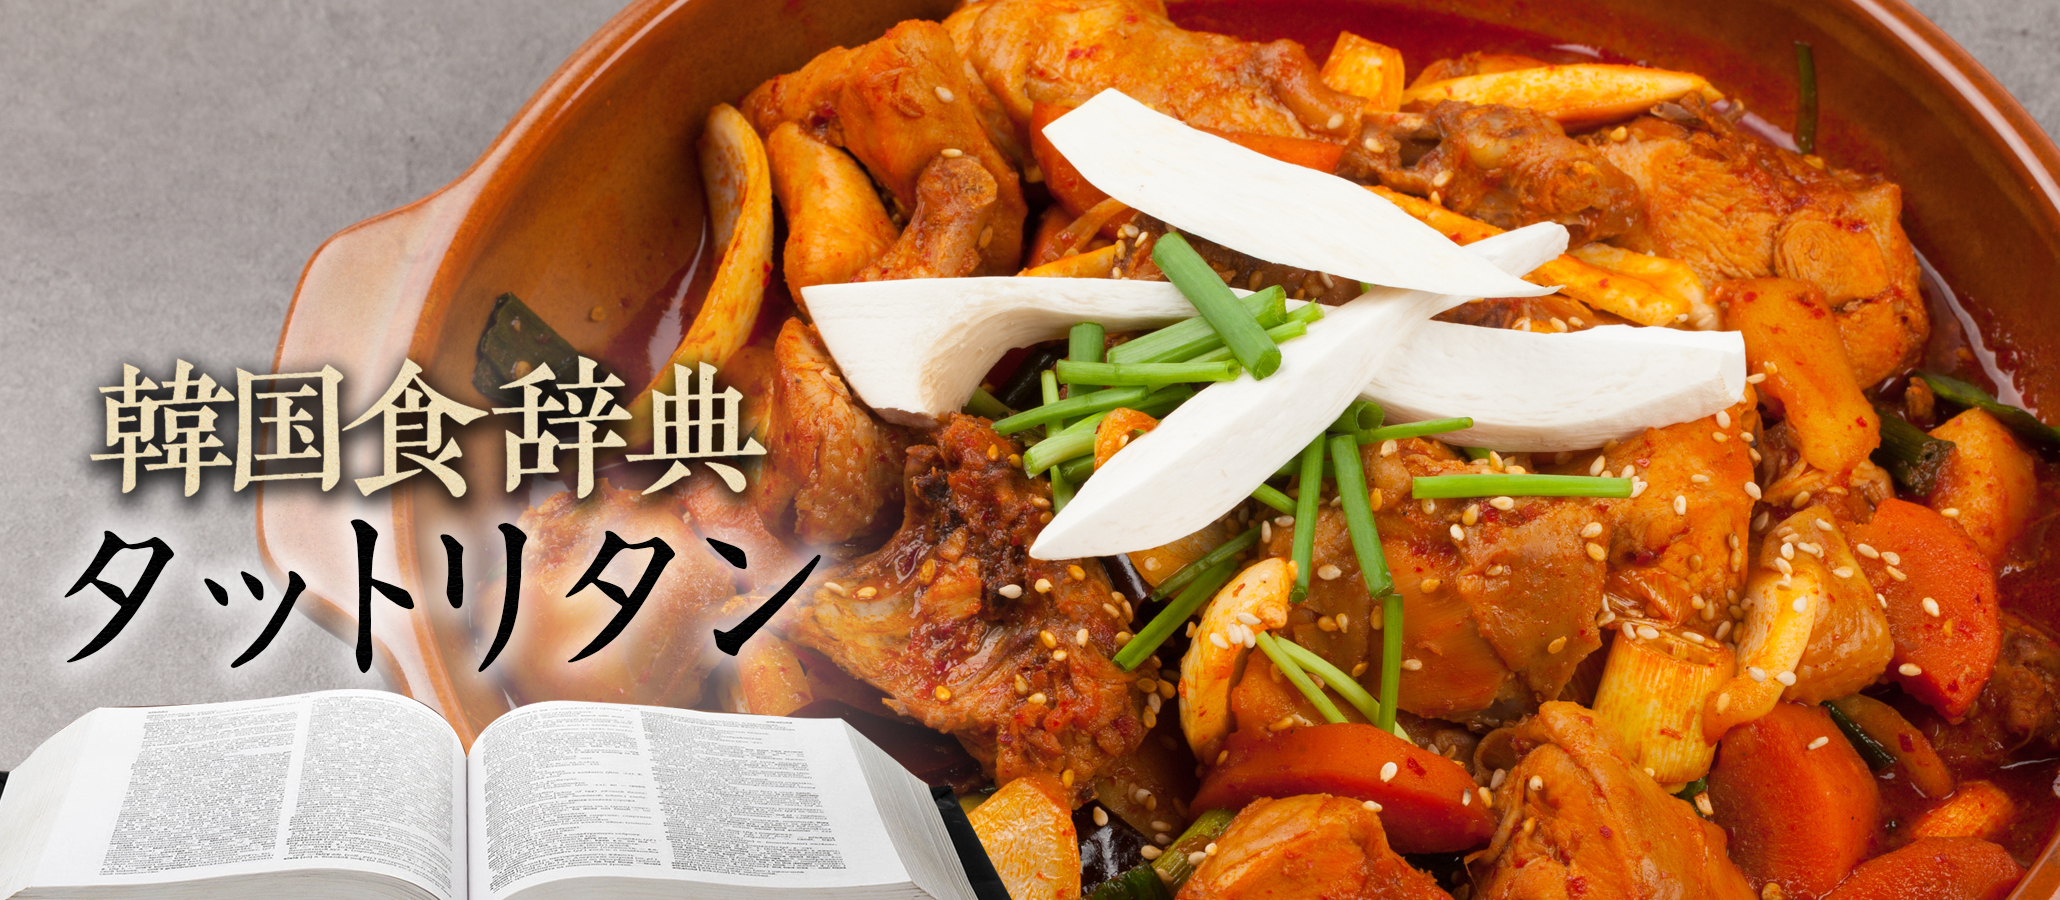 韓国食辞典「タットリタン」